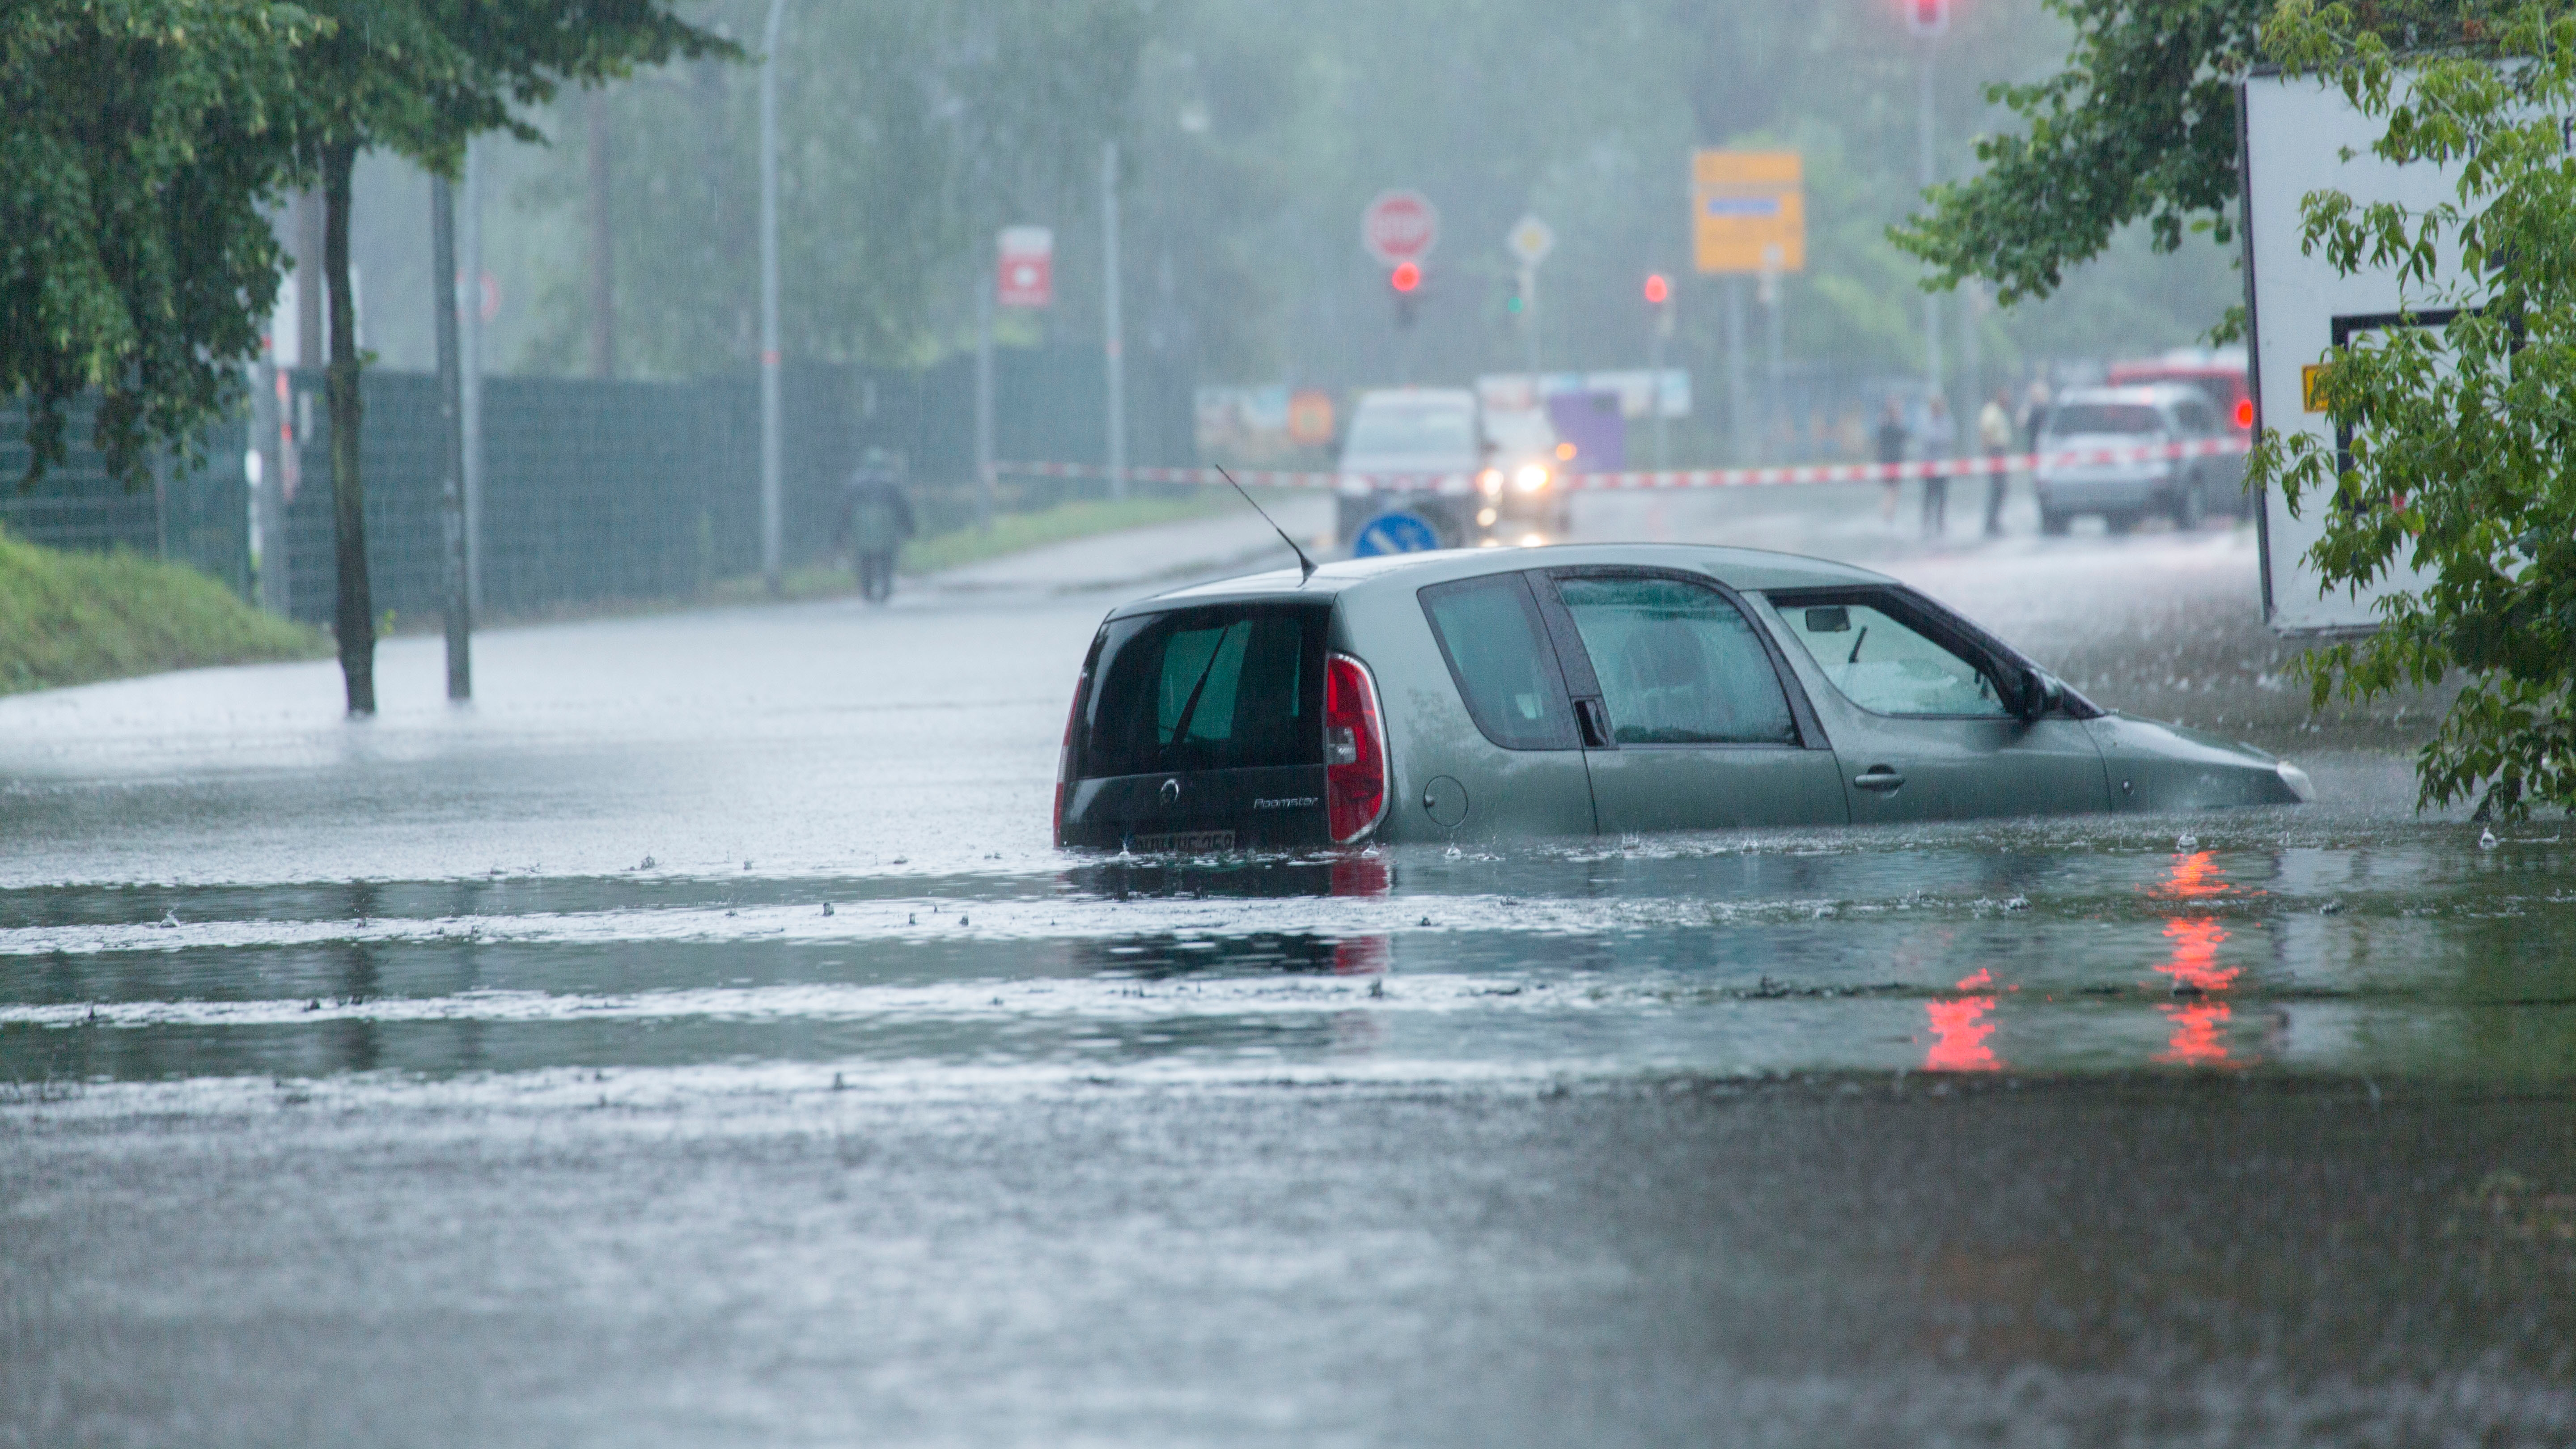 Überschwemmung: Kann man mit dem Auto durch überflutete Straßen fahren?